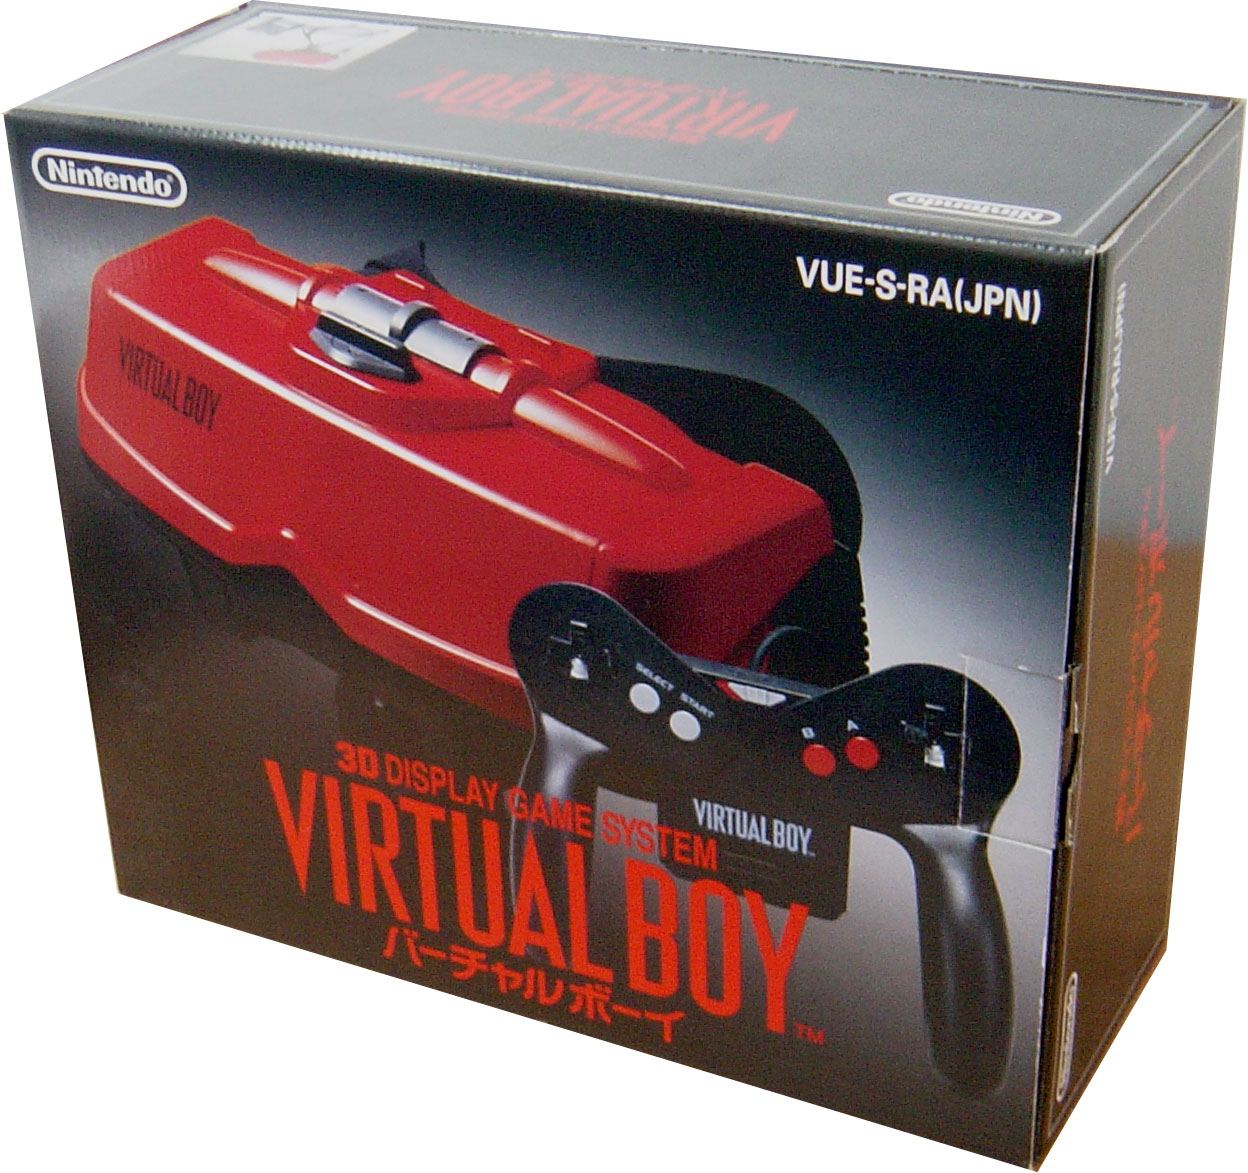 Virtual Boy System